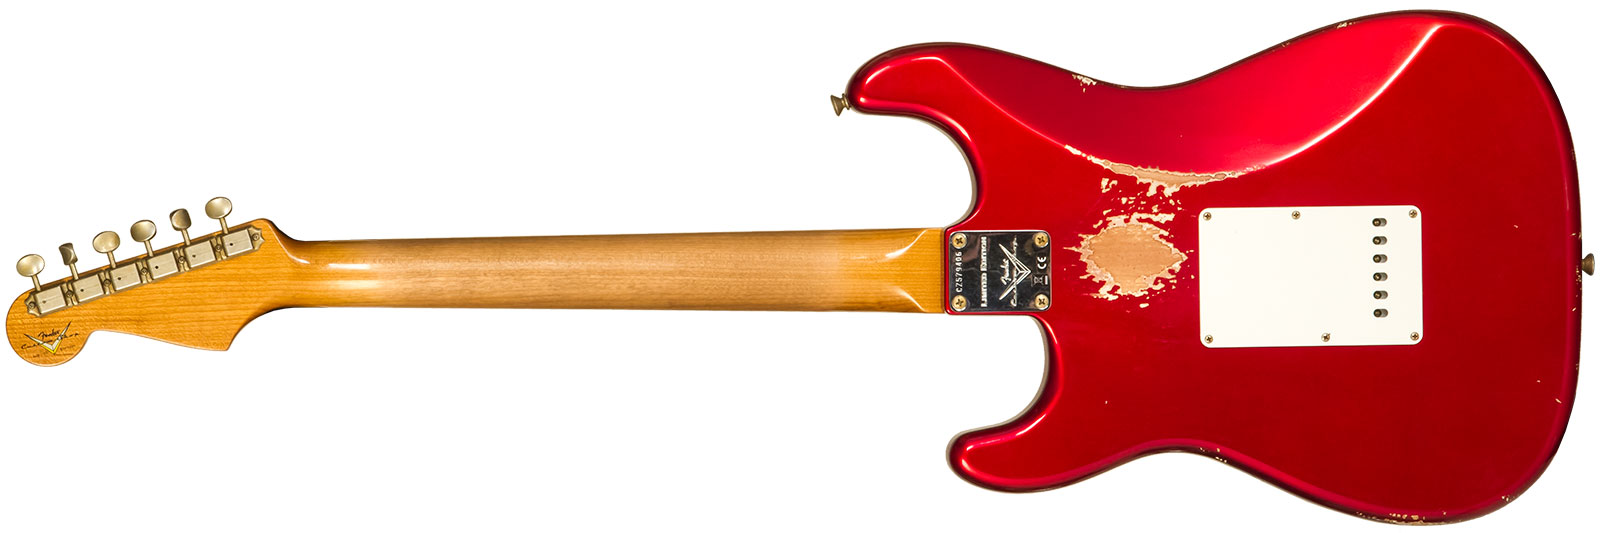 Fender Custom Shop Strat 1963 3s Trem Rw #cz579406 - Relic Aged Candy Apple Red - Elektrische gitaar in Str-vorm - Variation 1